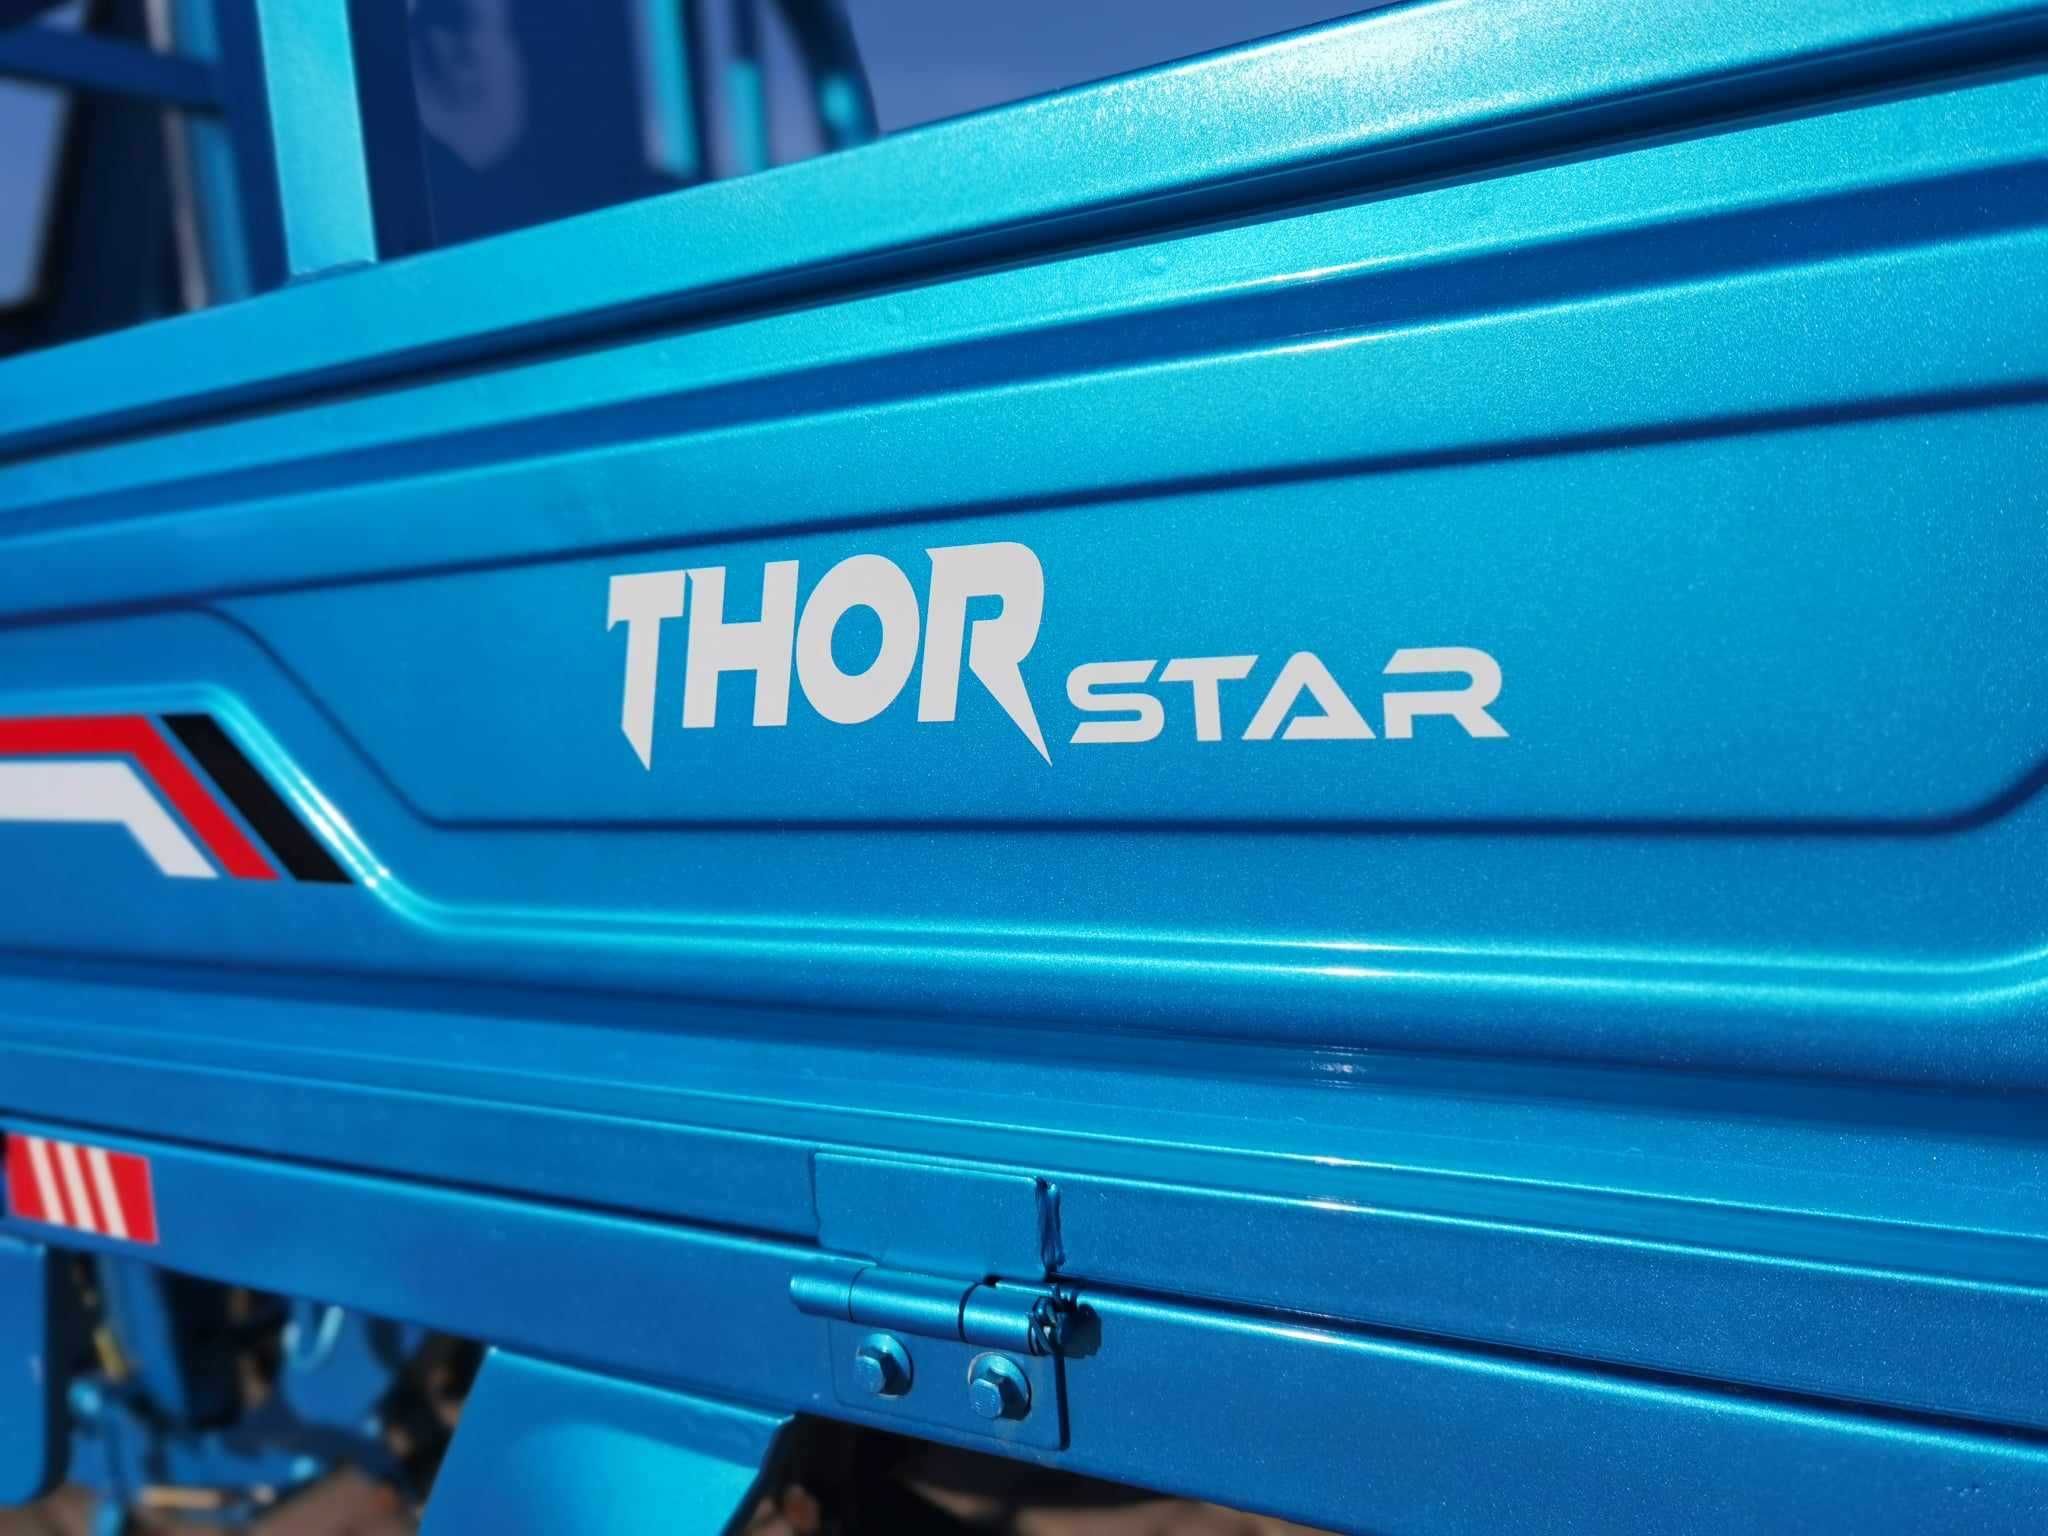 Triciclu electric CIV inclus cu cabina Thor Star PLUS-1200W Agramix